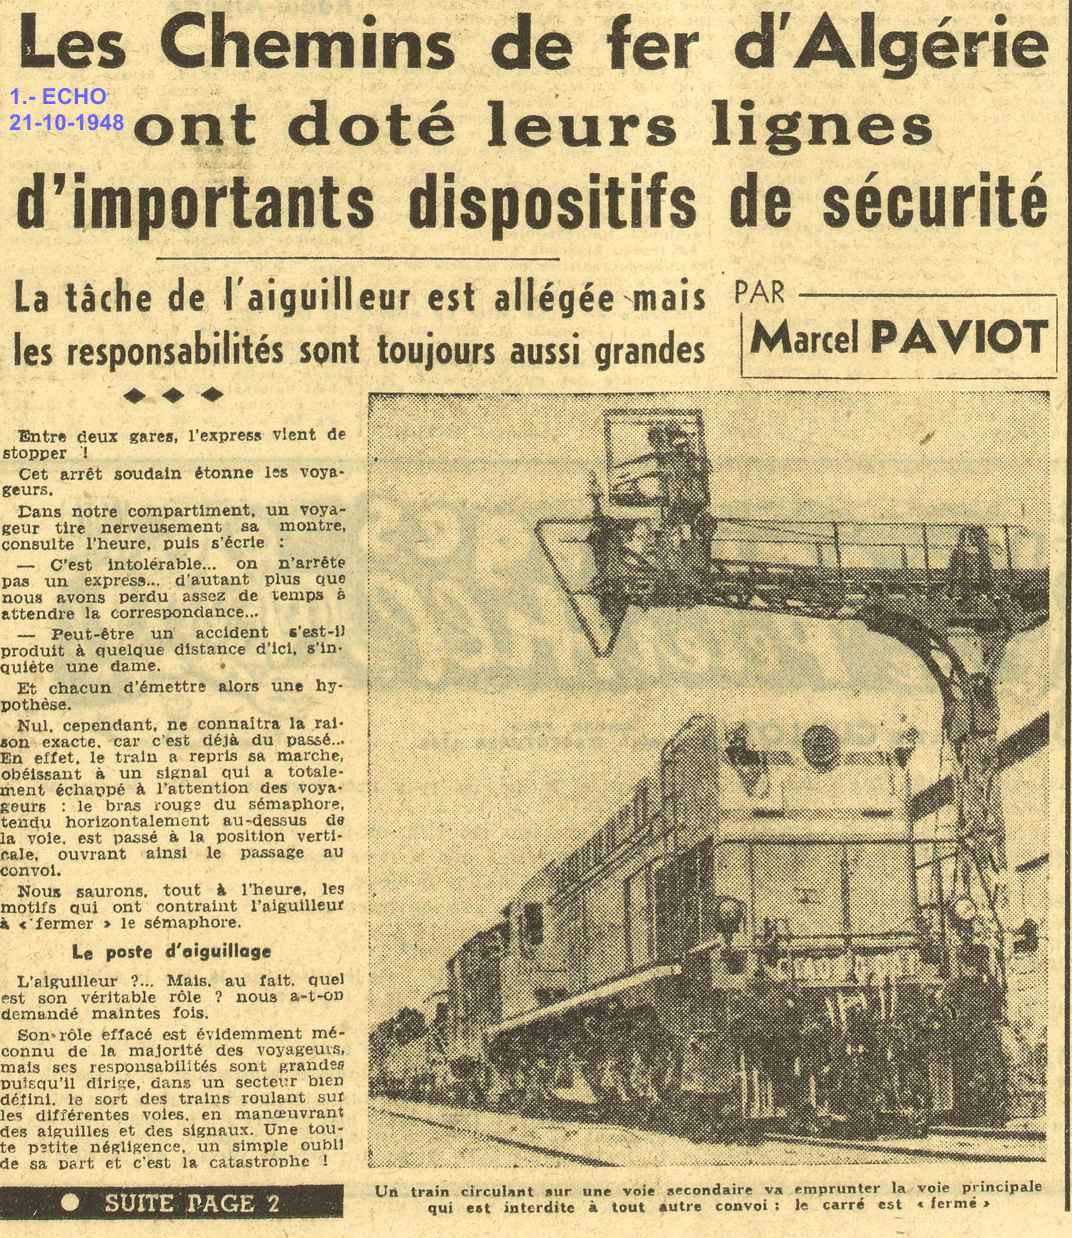 Les Chemins de fer d'Algérie ont doté leurs lignes d'importants dispositifs de sécurité